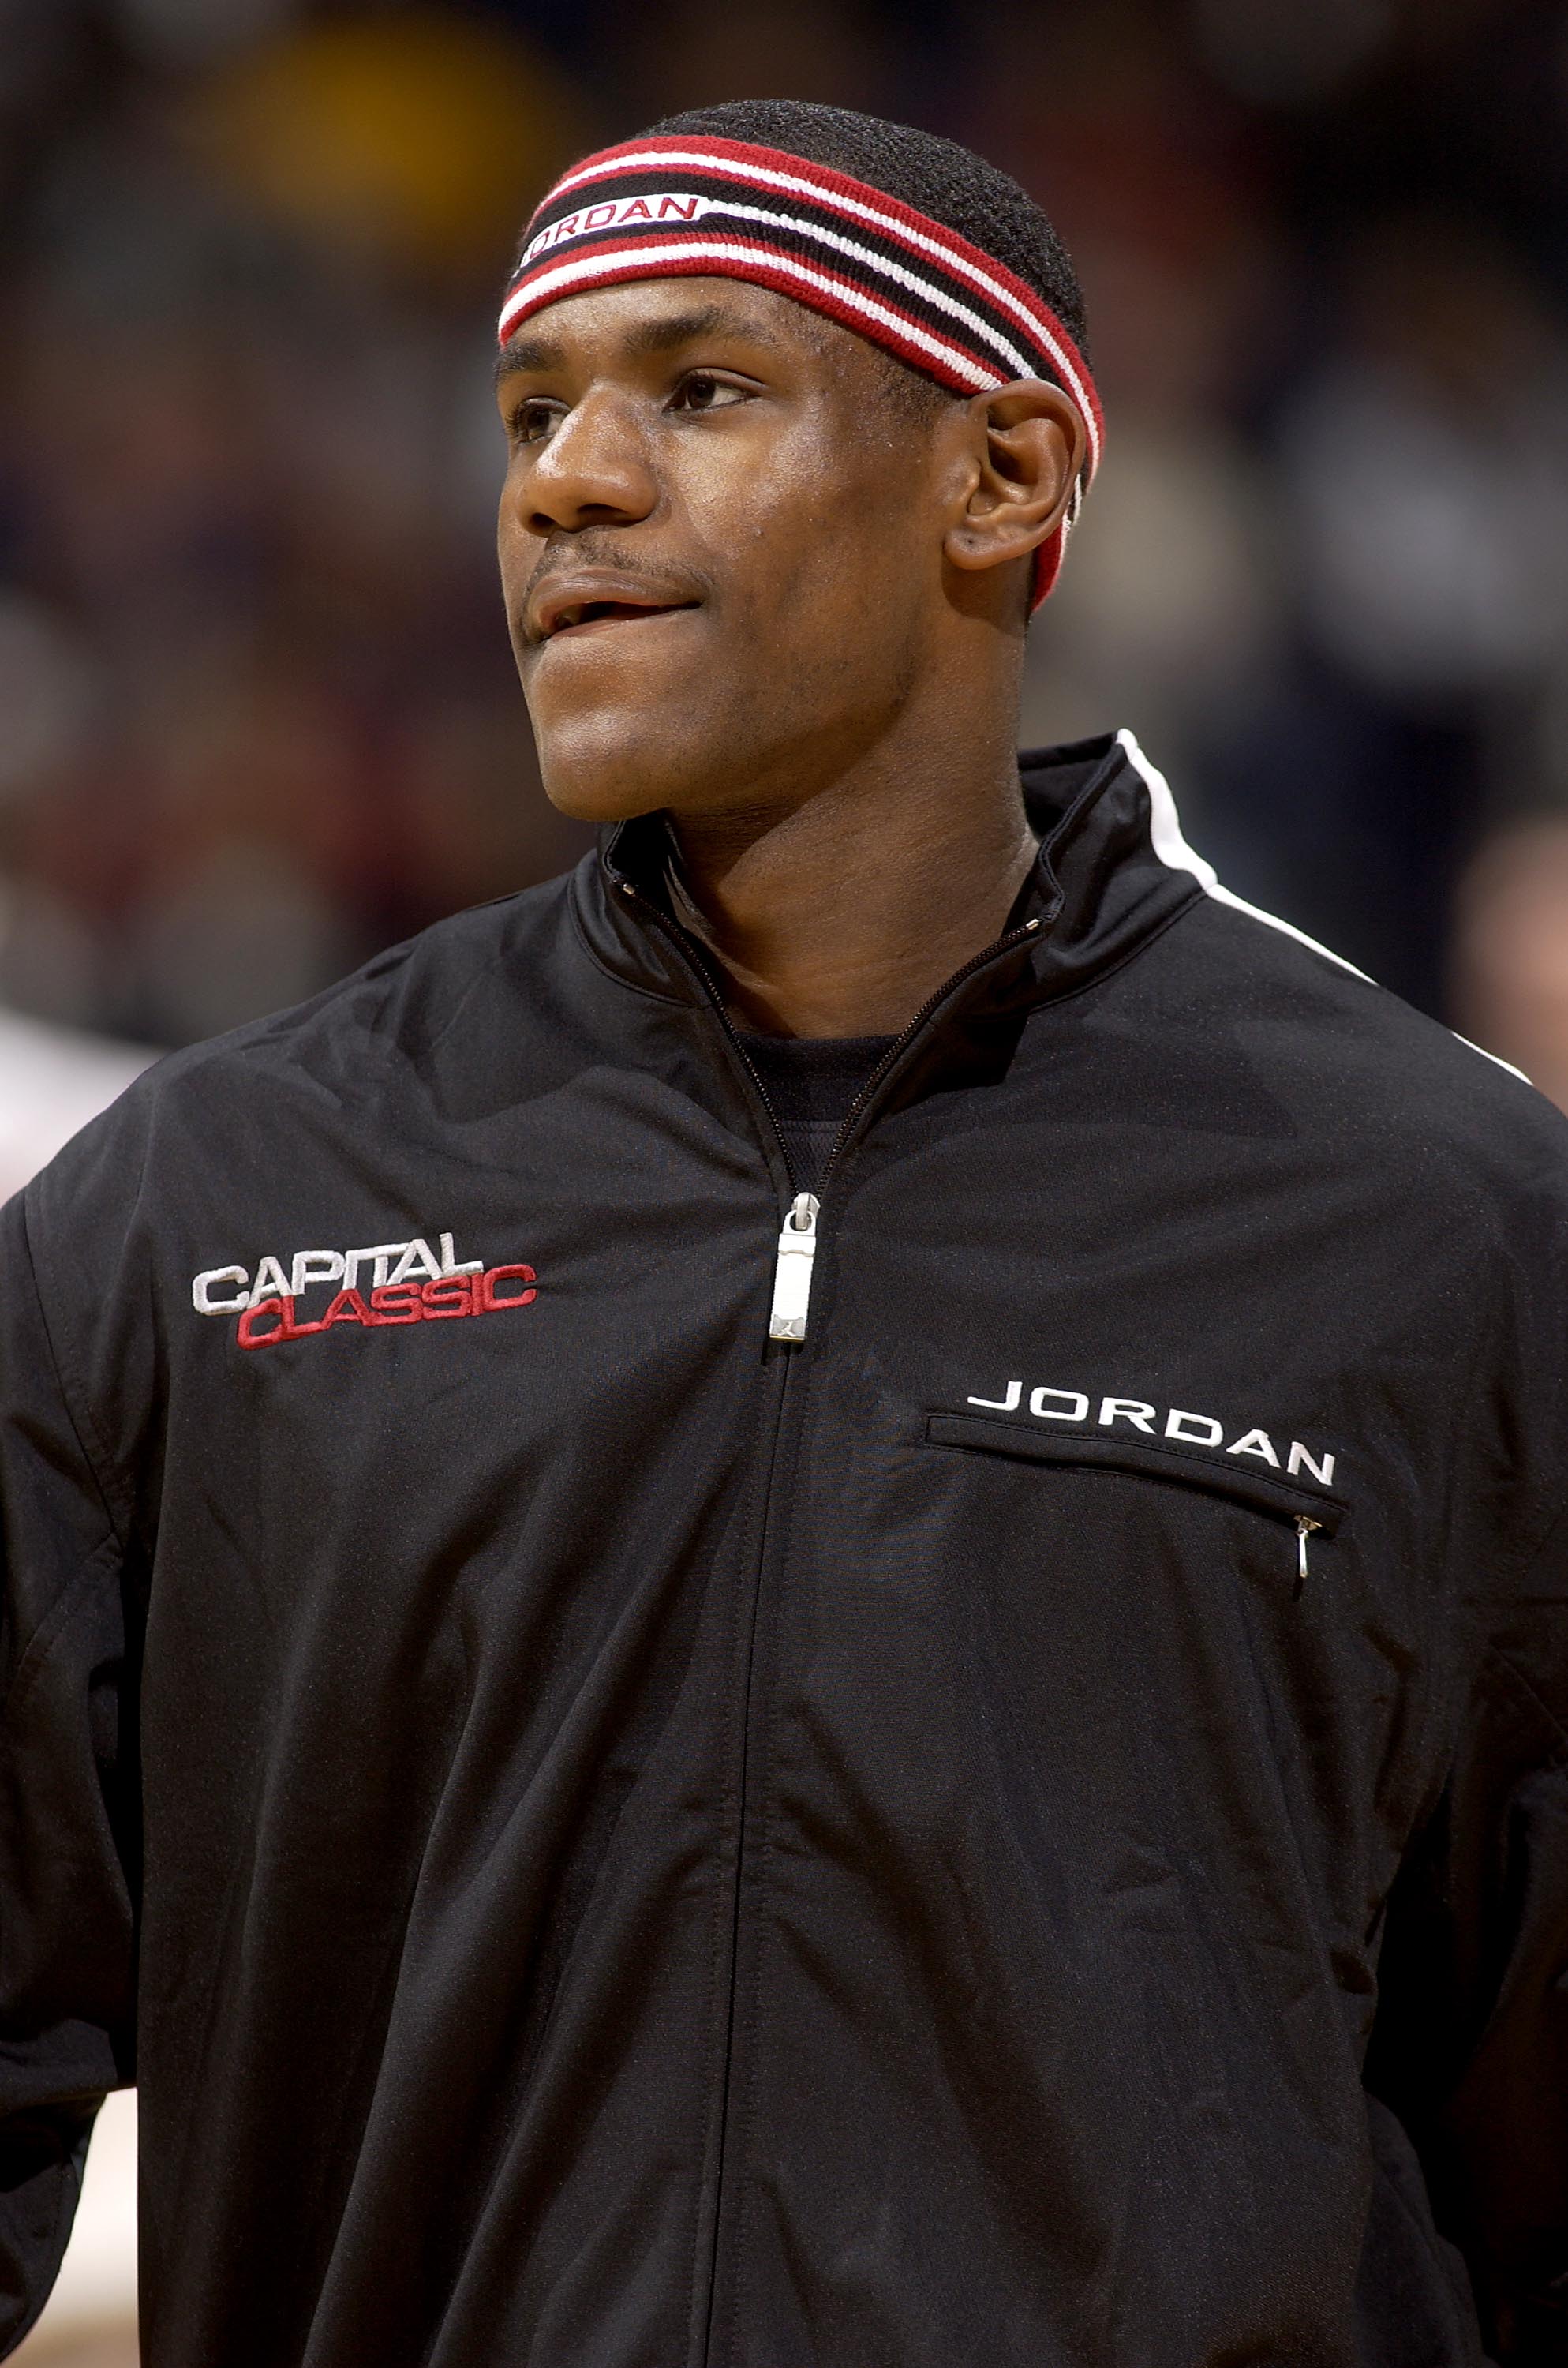 LeBron James s'échauffe avant le Jordan Capital Classic le 17 avril 2003 à Washington DC | Source : Getty Images